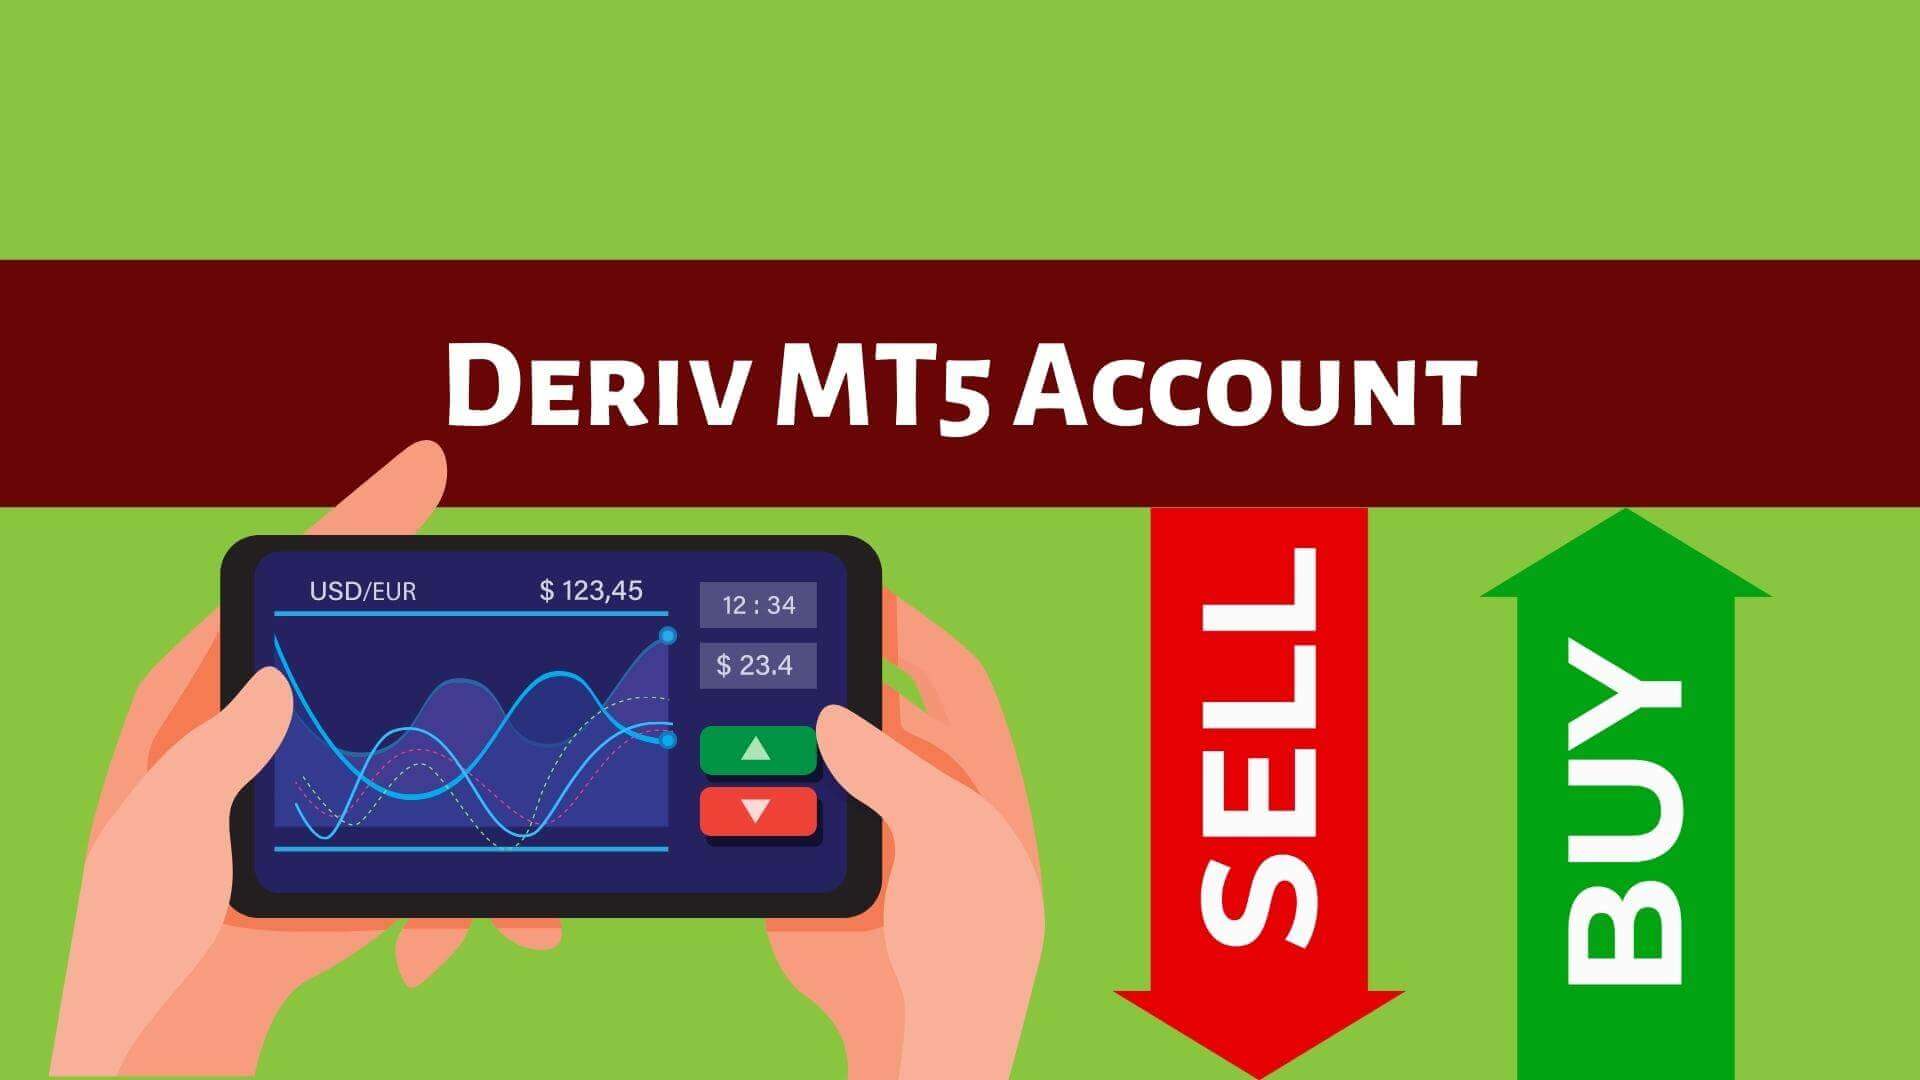 Deriv MT5 Account - Binoption